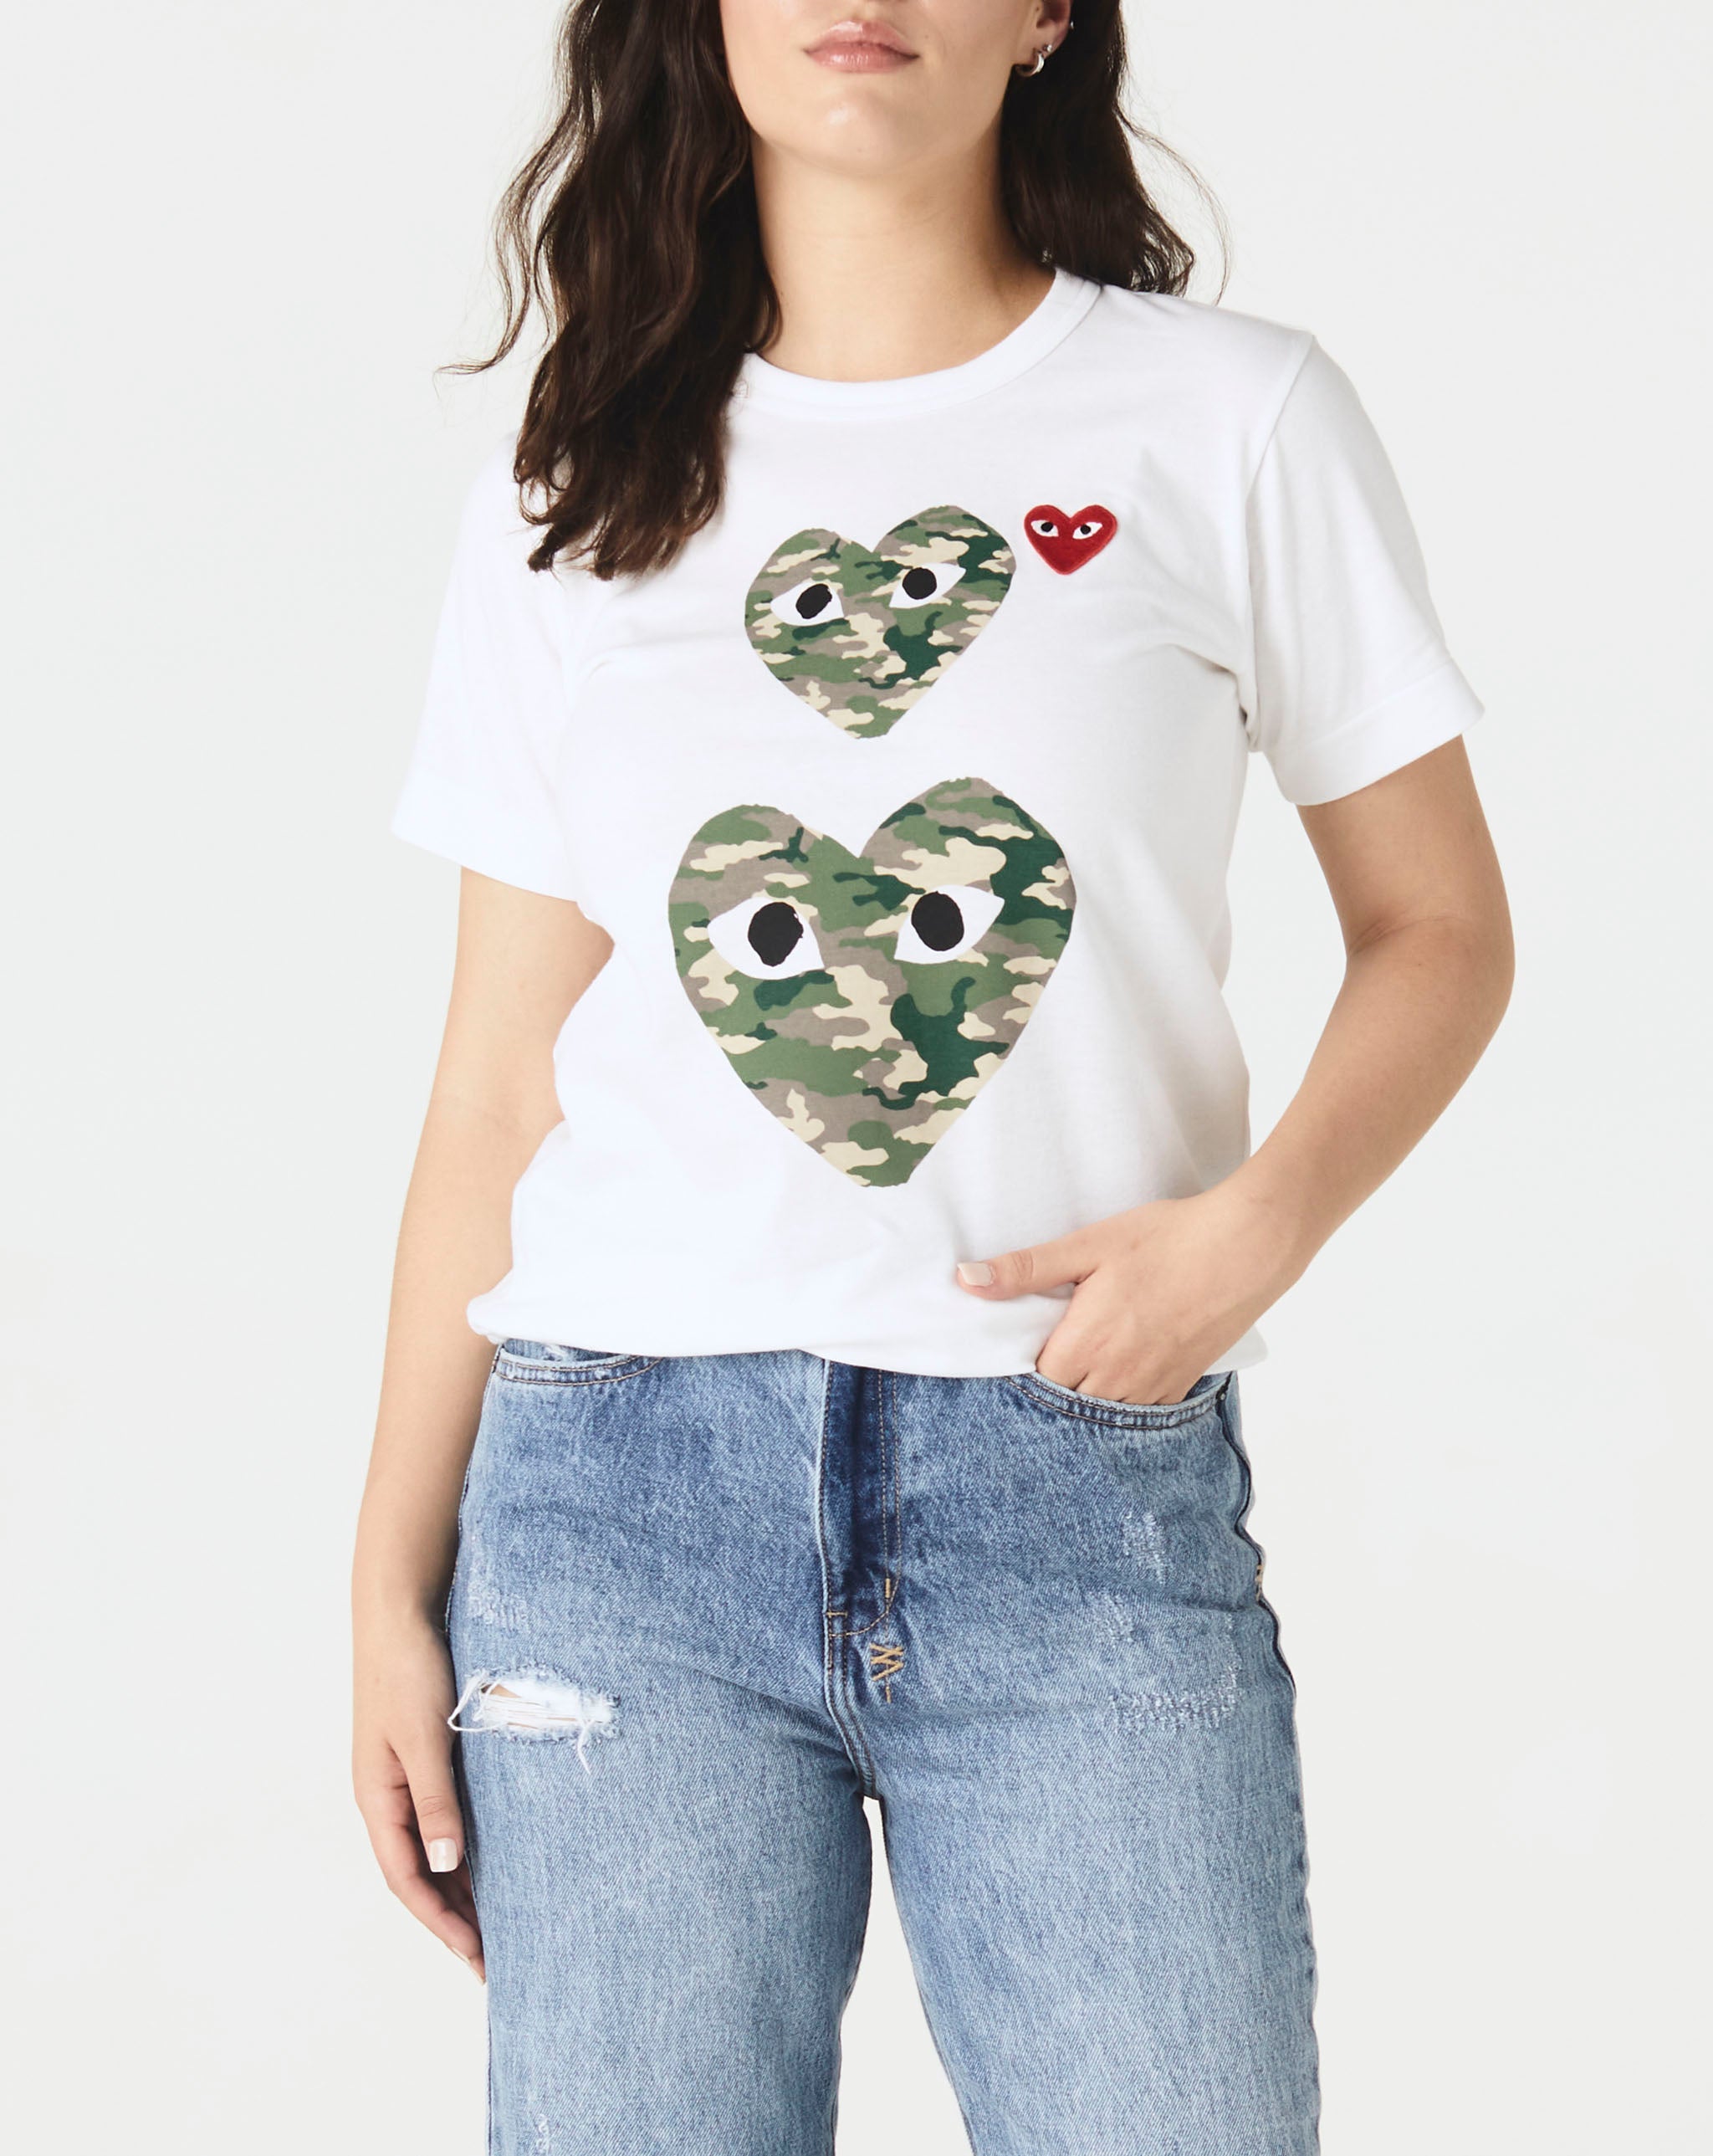 Fresh Sweatshirt Teen Women's Double Camo Heart T-Shirt  - Cheap Erlebniswelt-fliegenfischen Jordan outlet